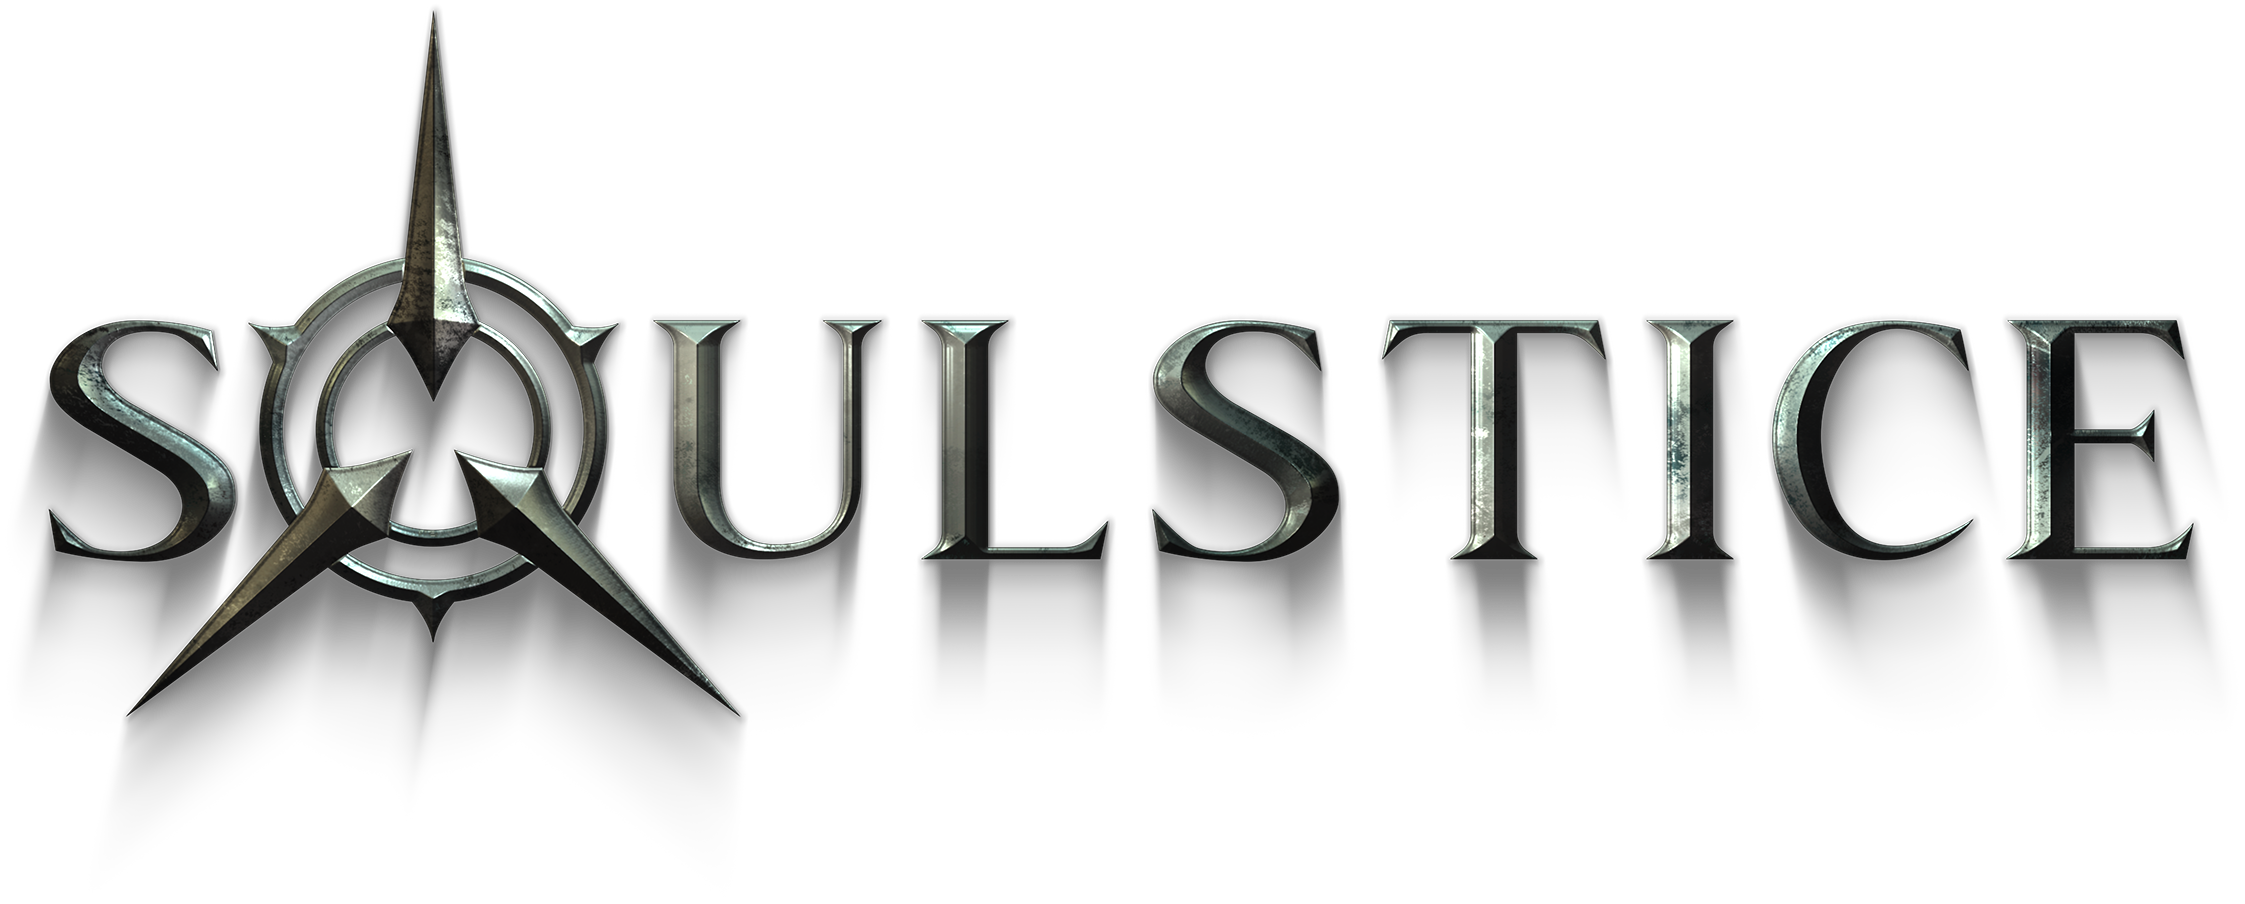 Soulstice disponibile ora per PlayStation 5, Xbox Series X|S e PC